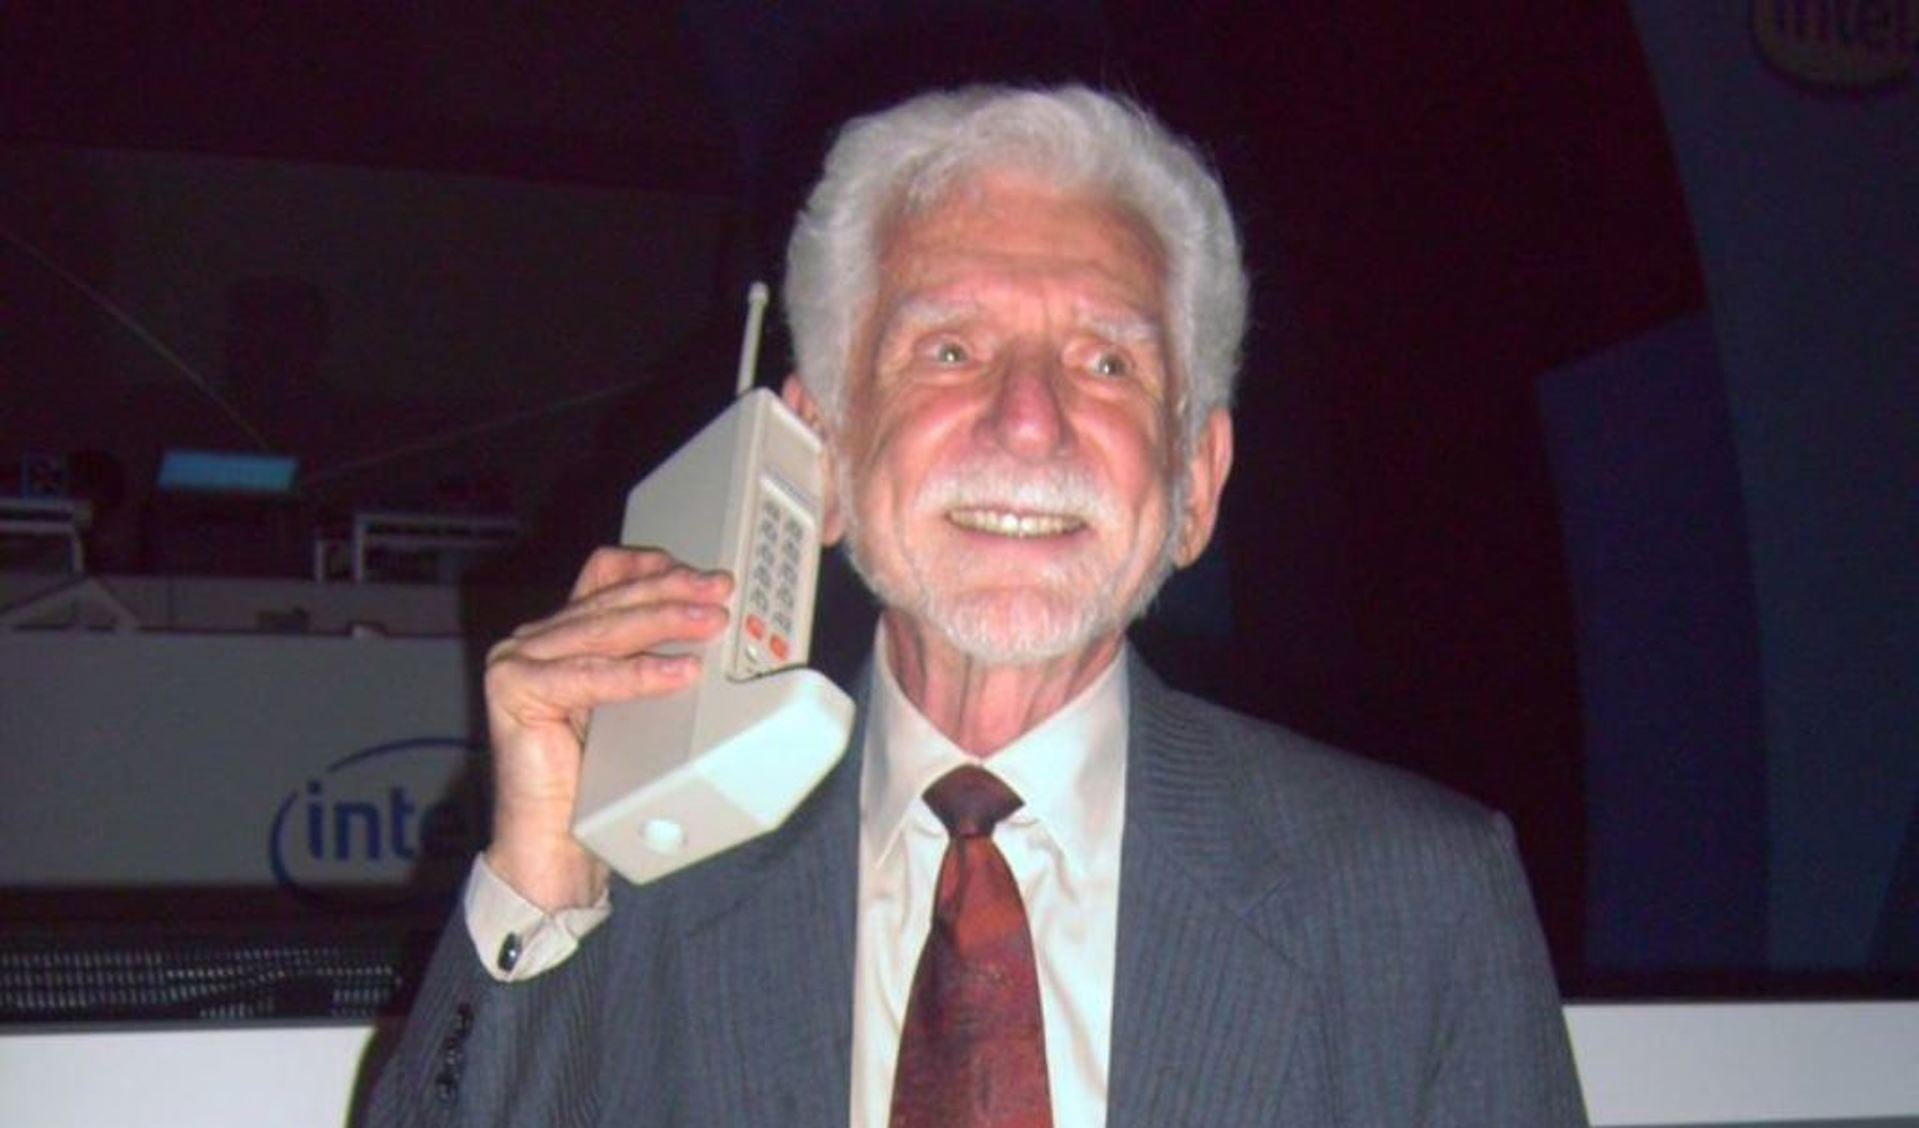 Blij met de eerste mobiele telefoon.